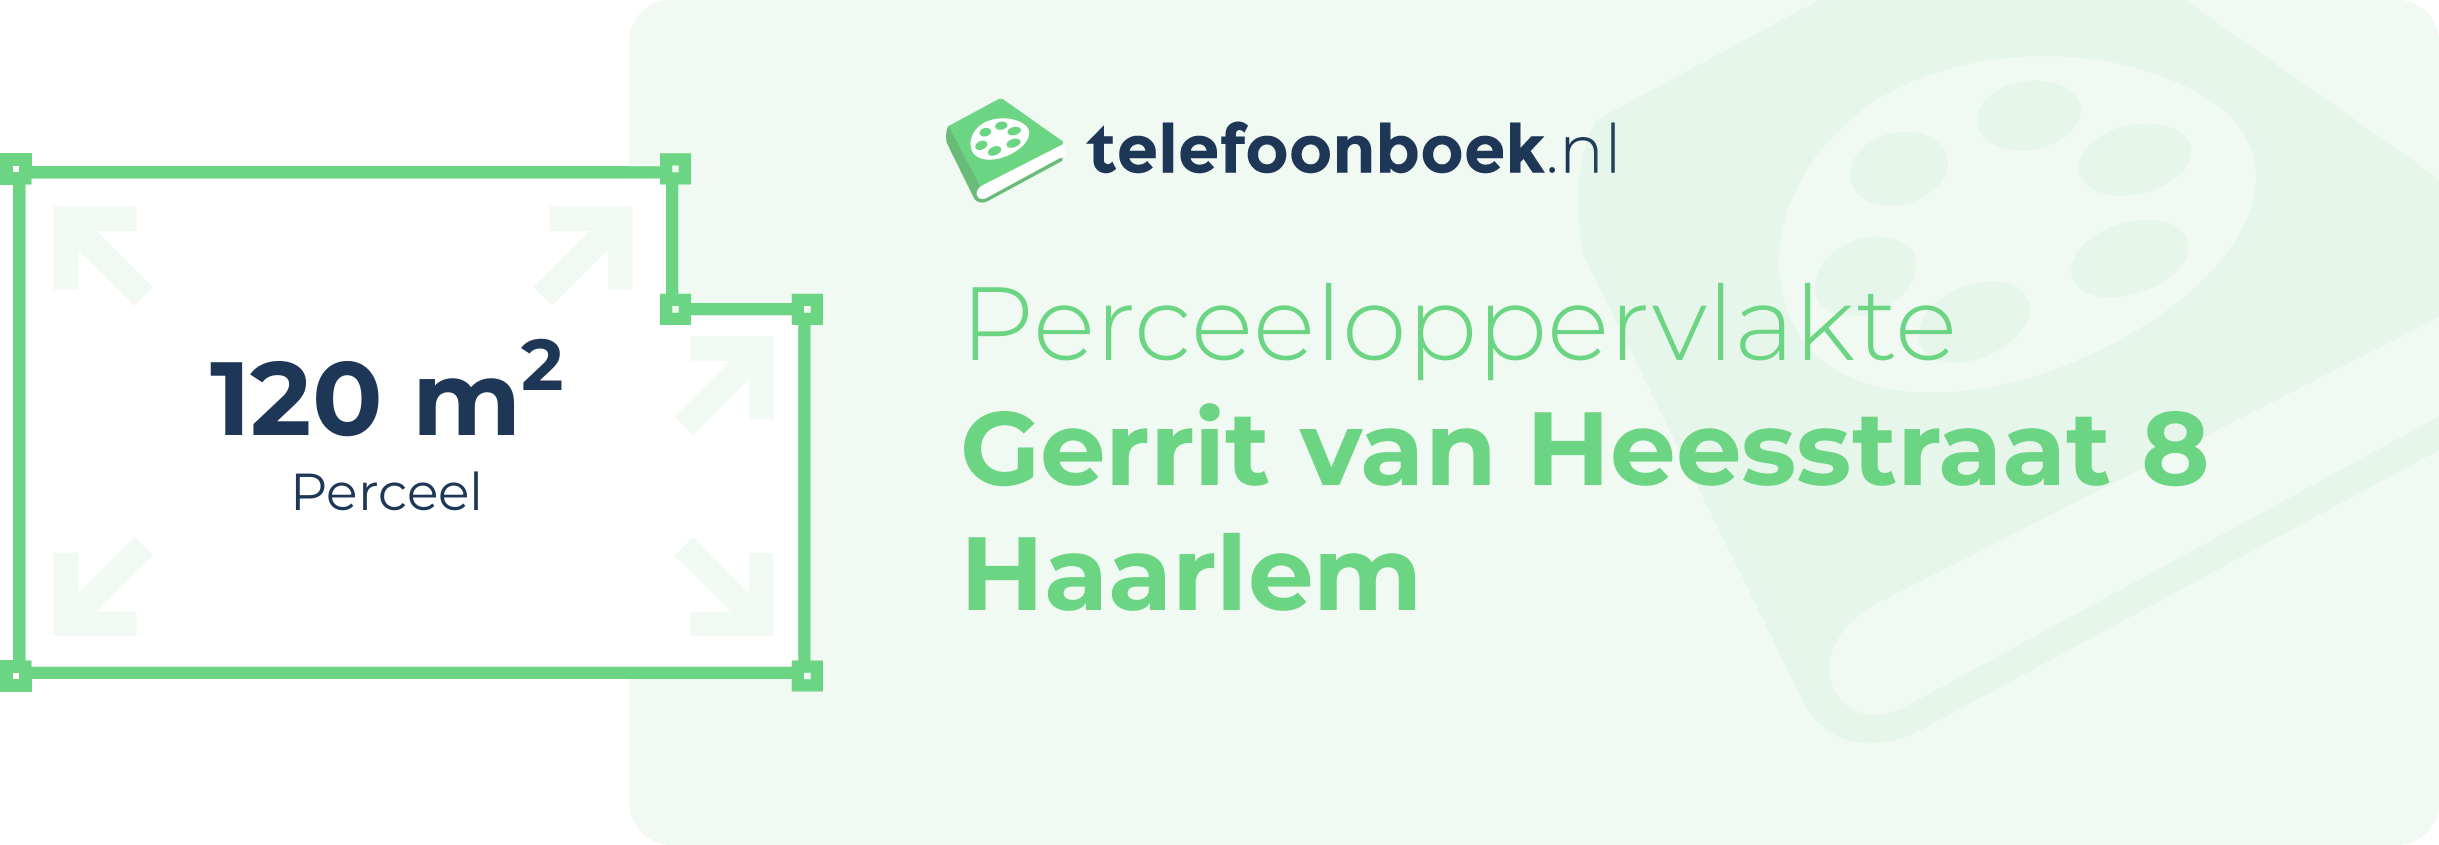 Perceeloppervlakte Gerrit Van Heesstraat 8 Haarlem